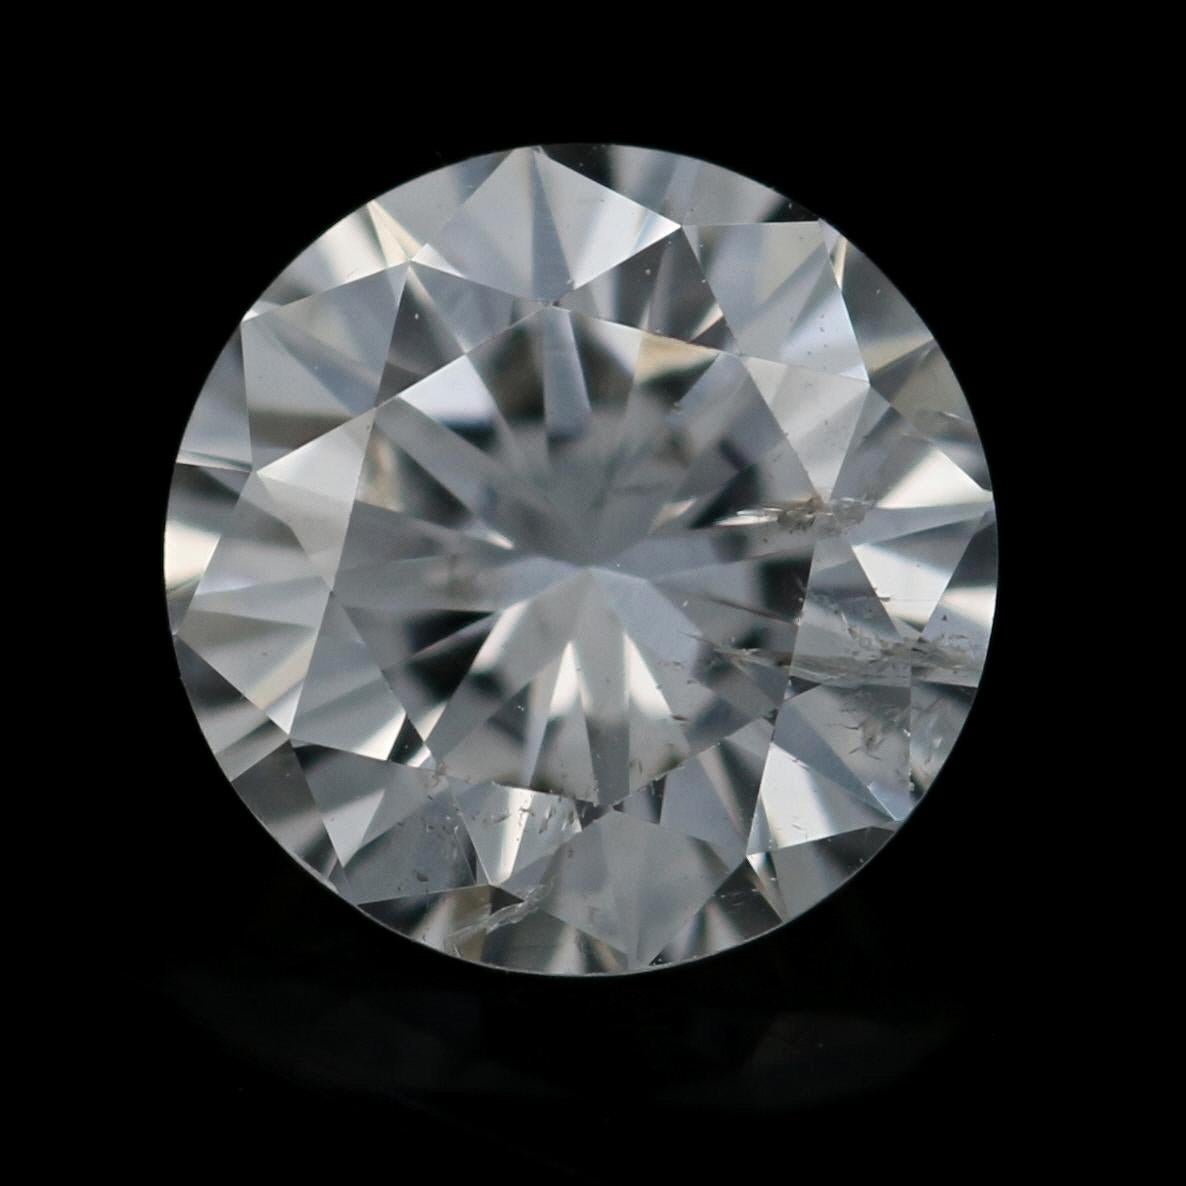 .51 carat diamond price